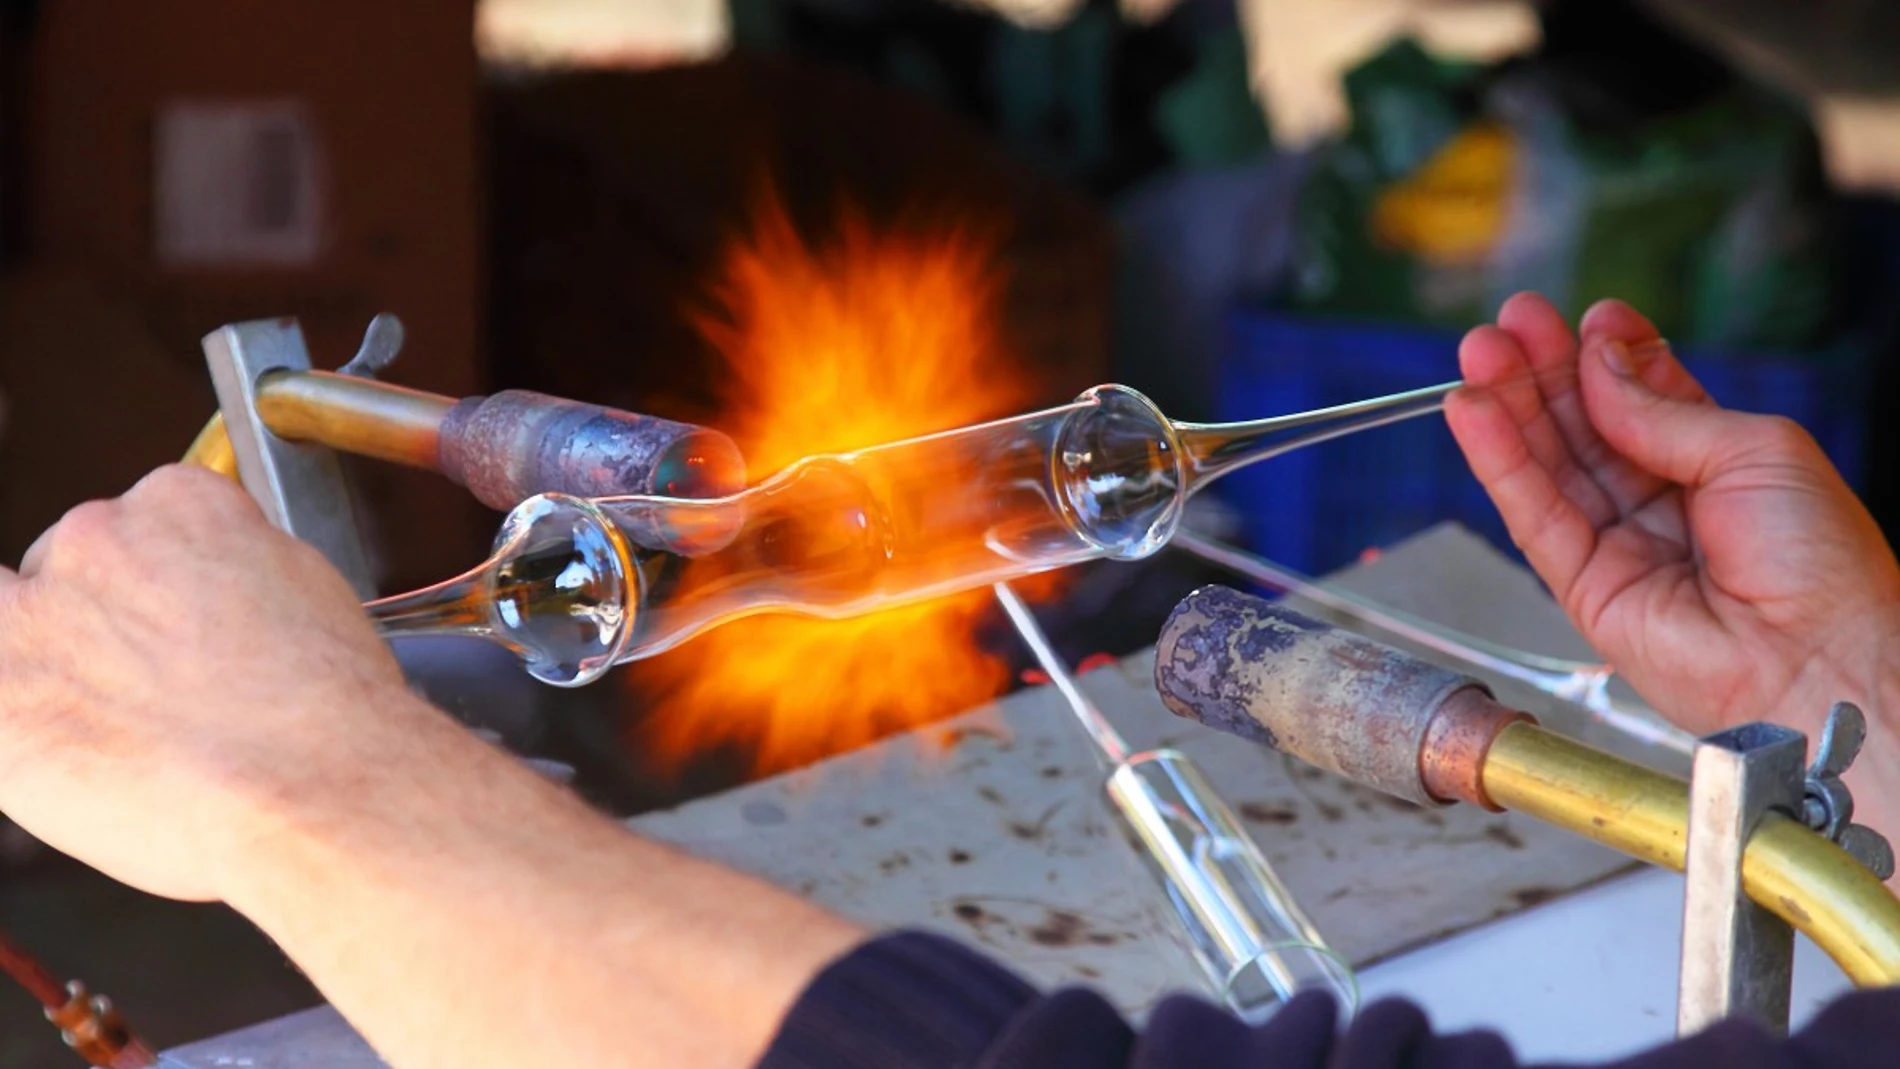 La técnica de soplado permite poder moldear el vidrio aplicando calor y fuerza.